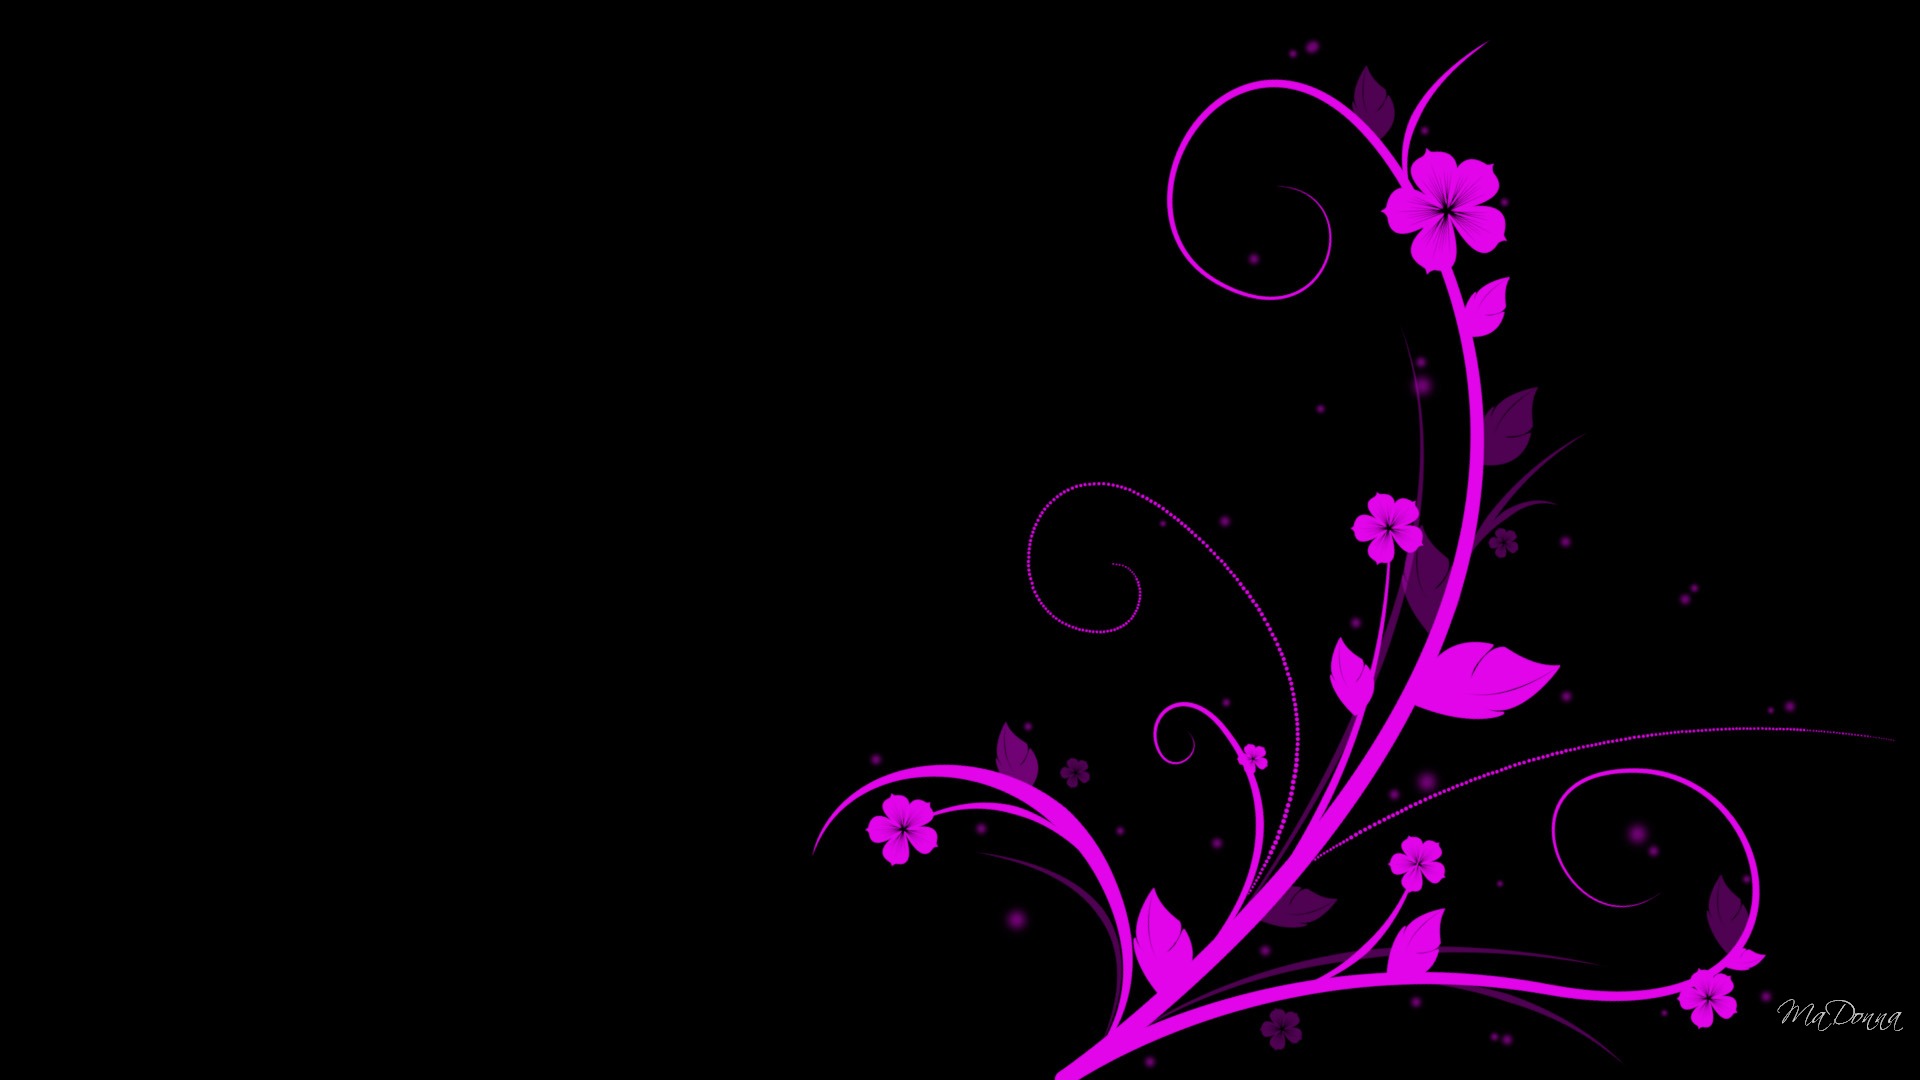 Pink And Black Wallpaper Designs 2 Desktop Background